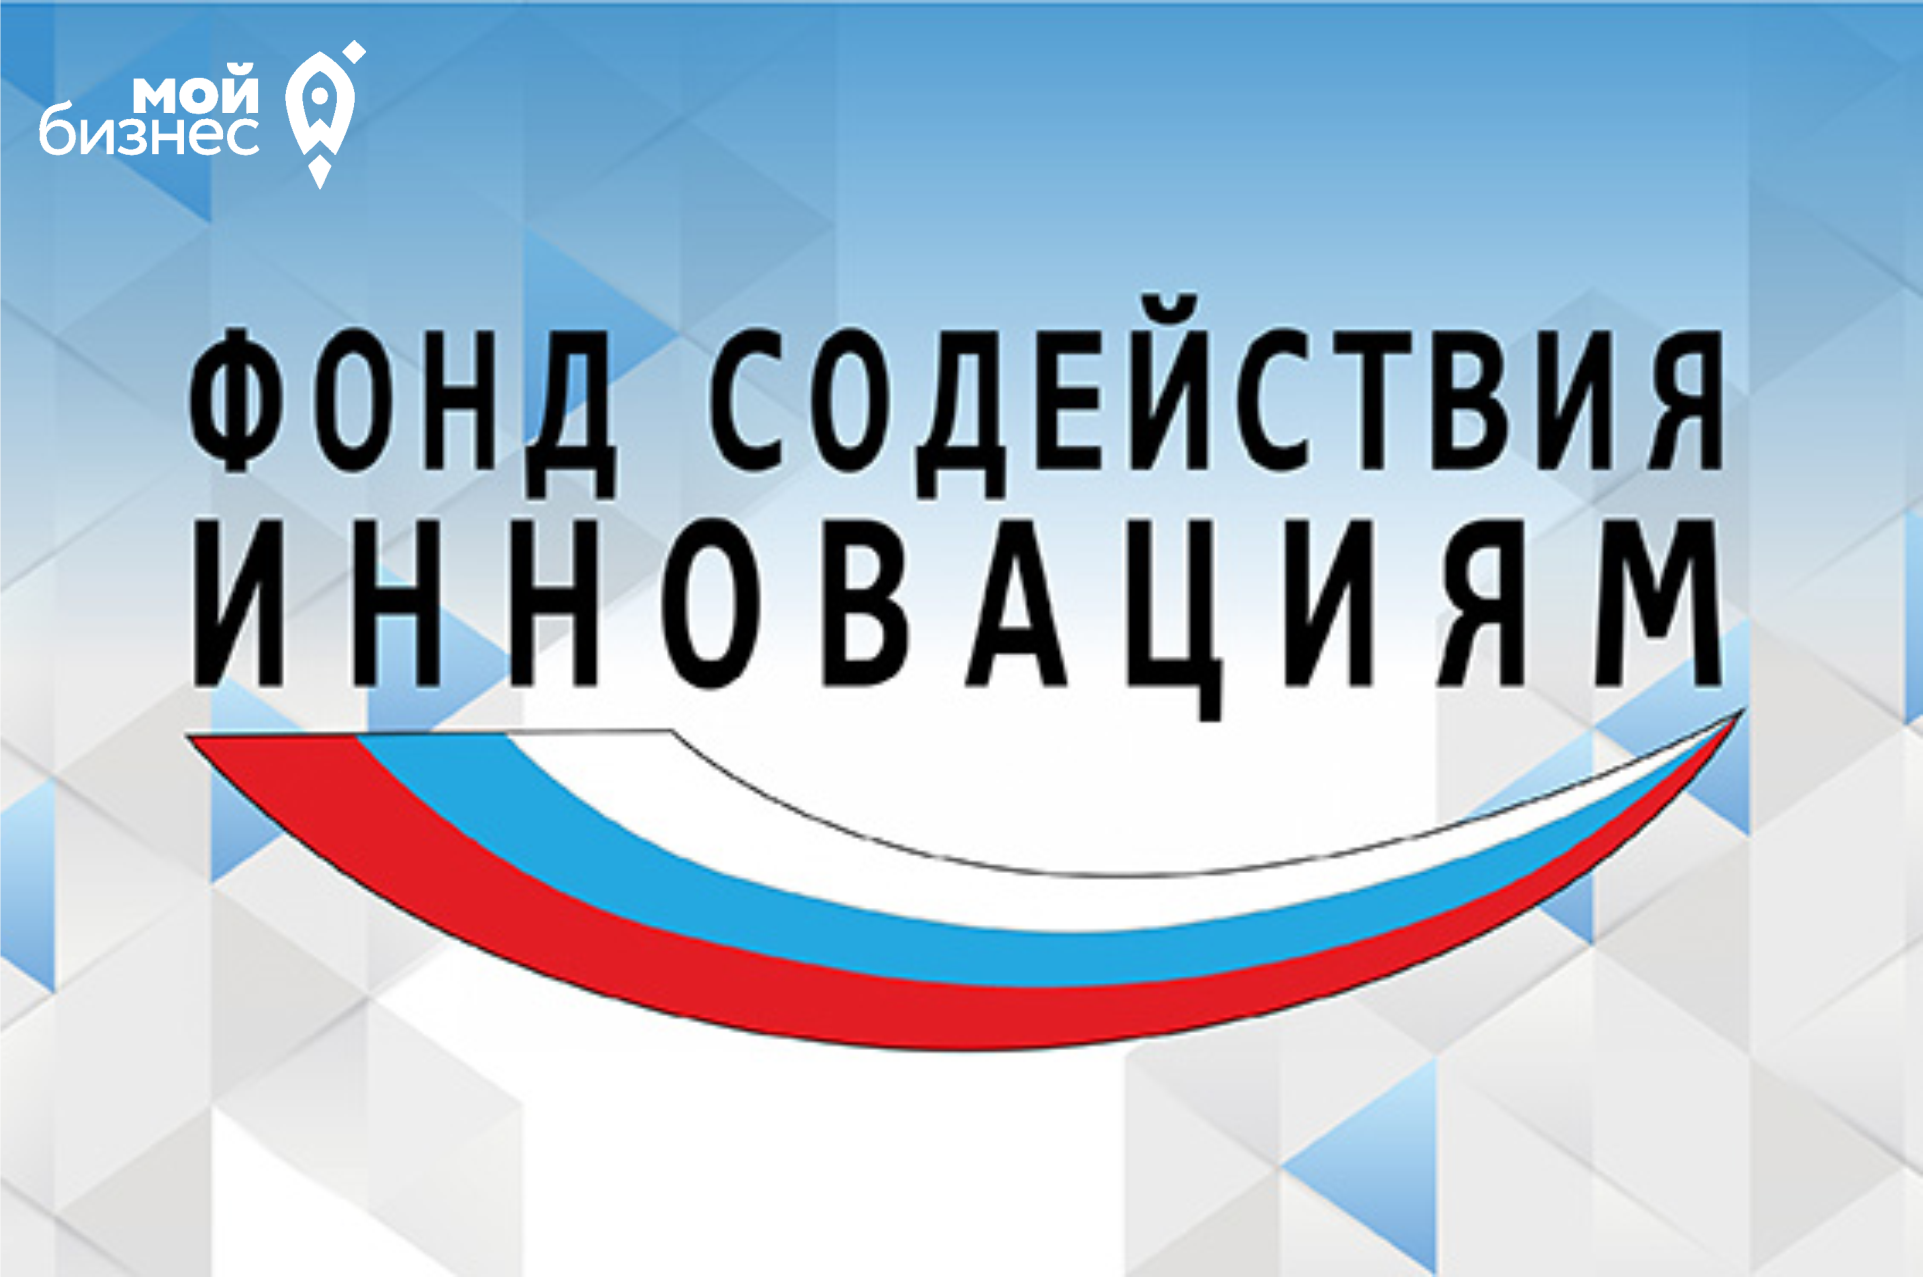 Волгоградских ученых и разработчиков приглашают принять участие в конкурсе «КОД-ИИ (ОЧЕРЕДЬ V)»